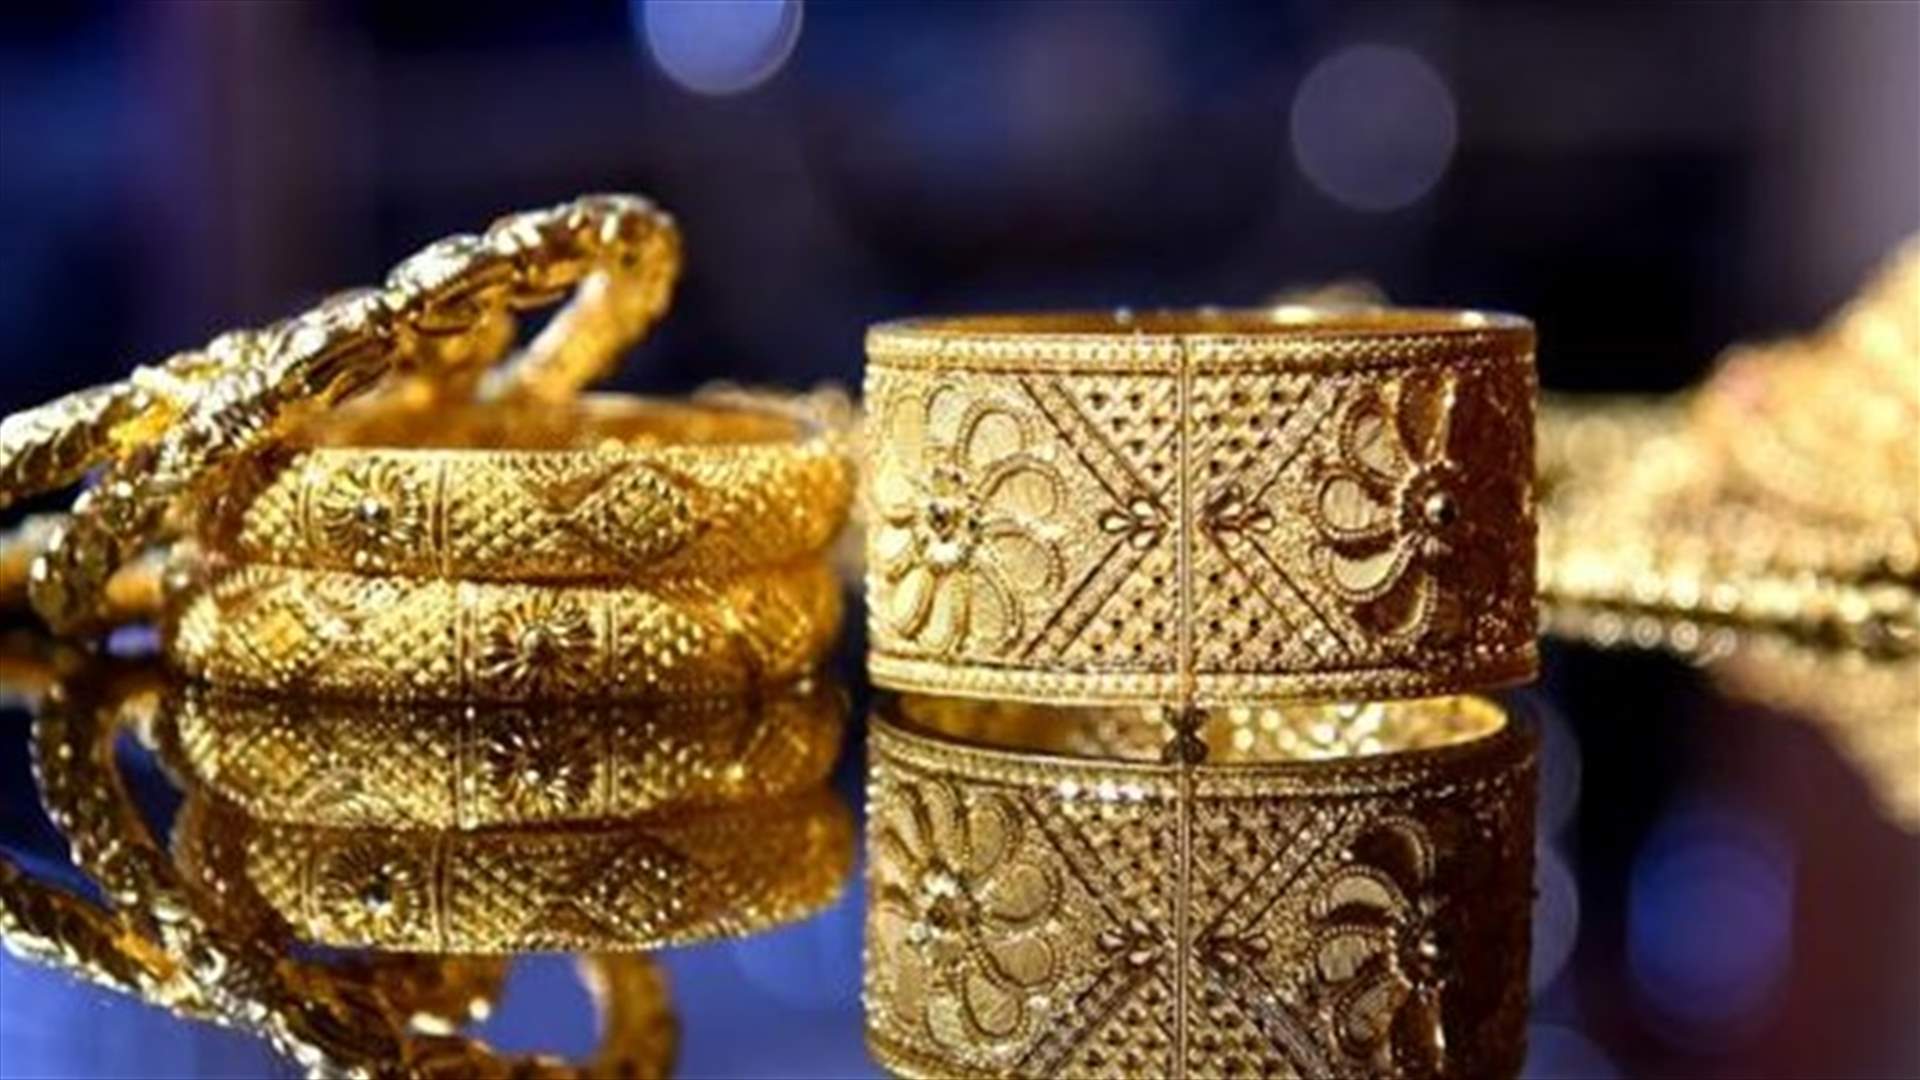 يبيع الذهب المزيّف في عين زحلتا وشريكه يشتري الذهب المسروق من سوريا